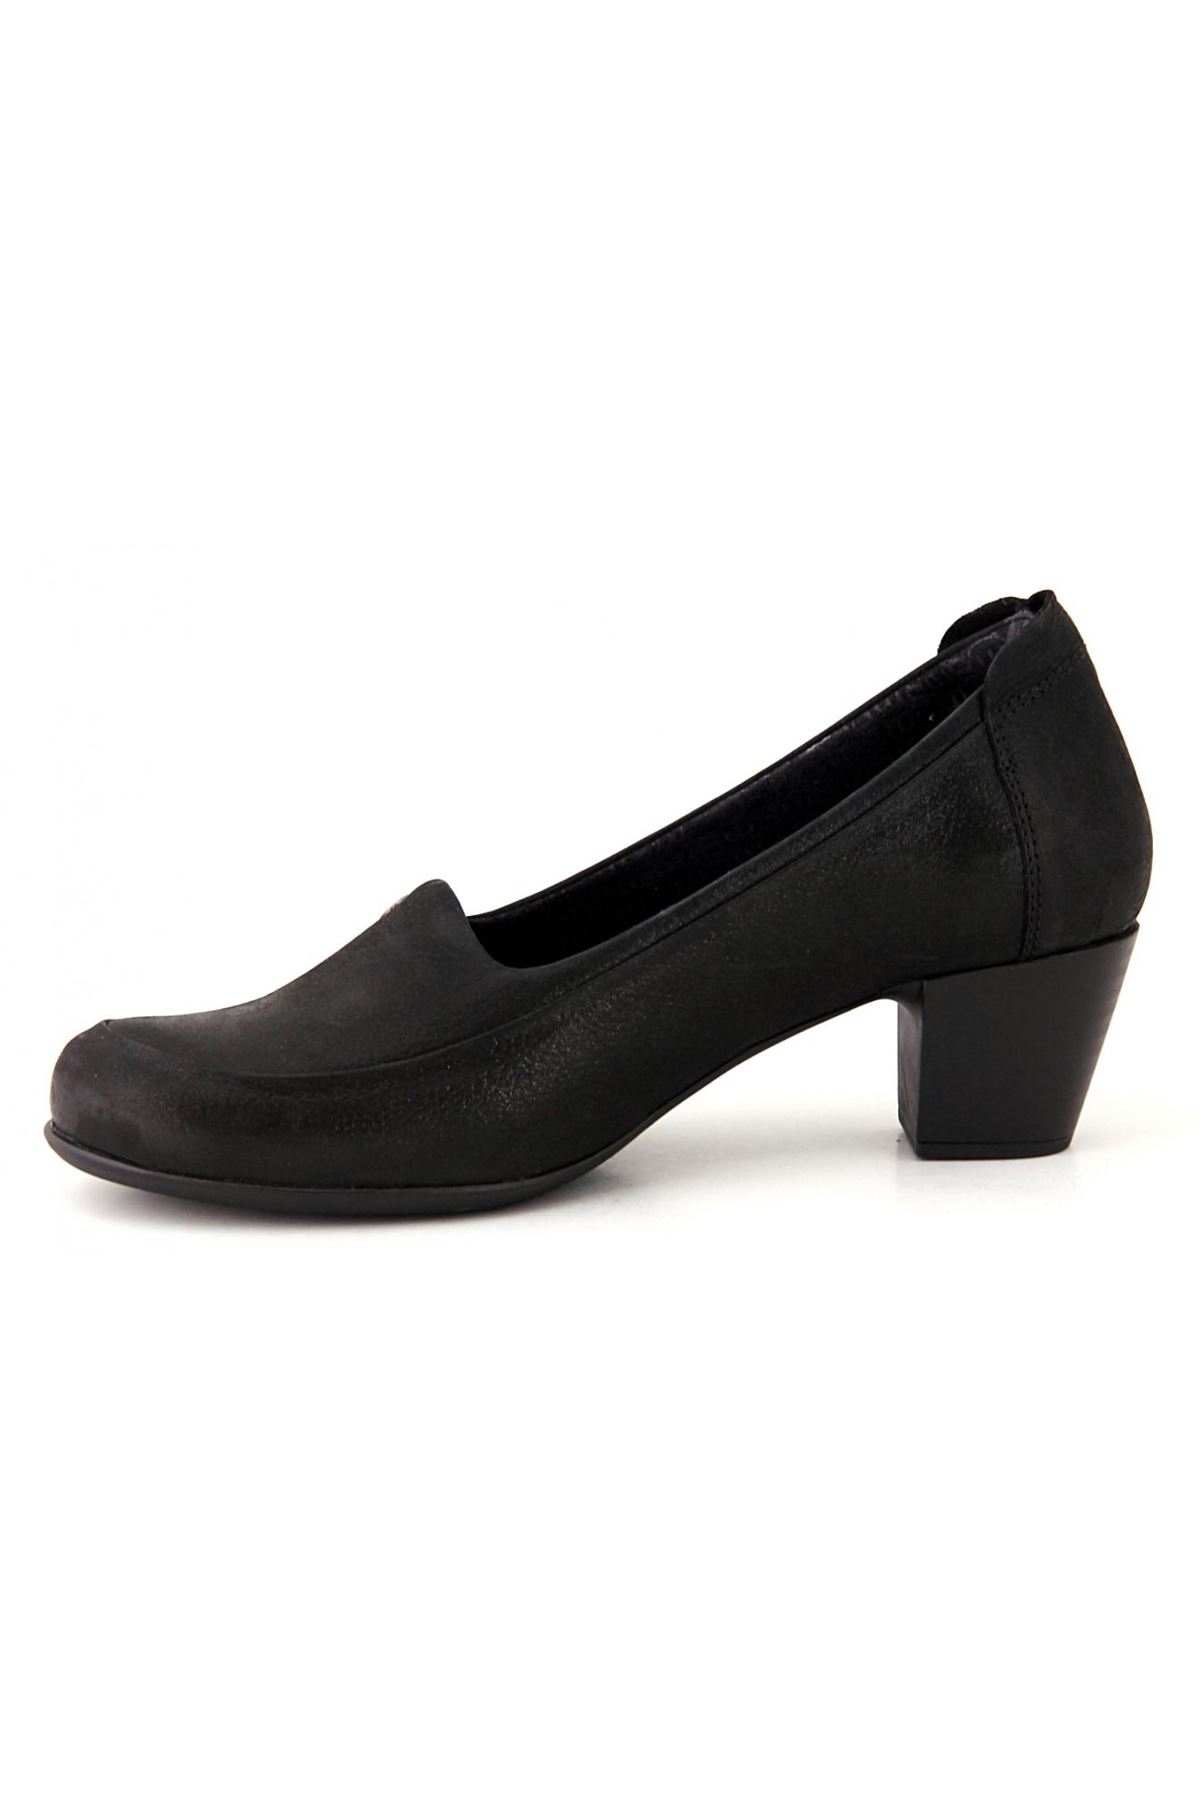 D19KA-525 Mammamia Günlük Bayan Ayakkabı - Siyah Jale